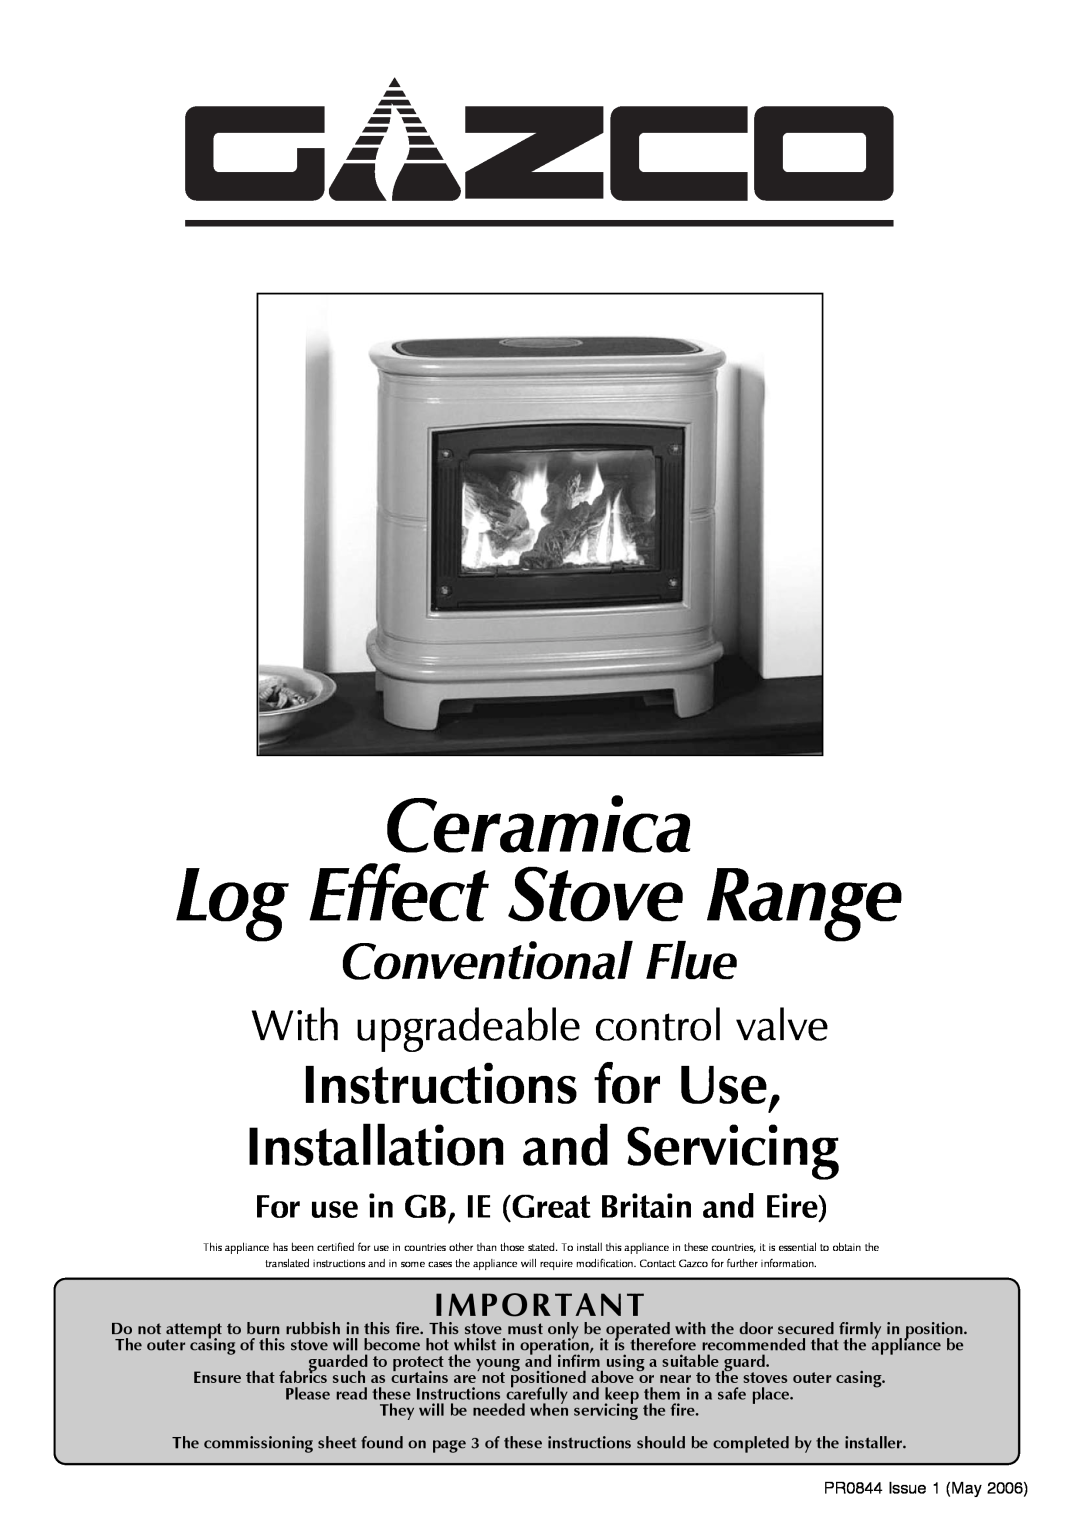 Stovax Gazco Ceremica Log Effect Stove Range manual Ceramica Log Effect Stove Range, Conventional Flue 